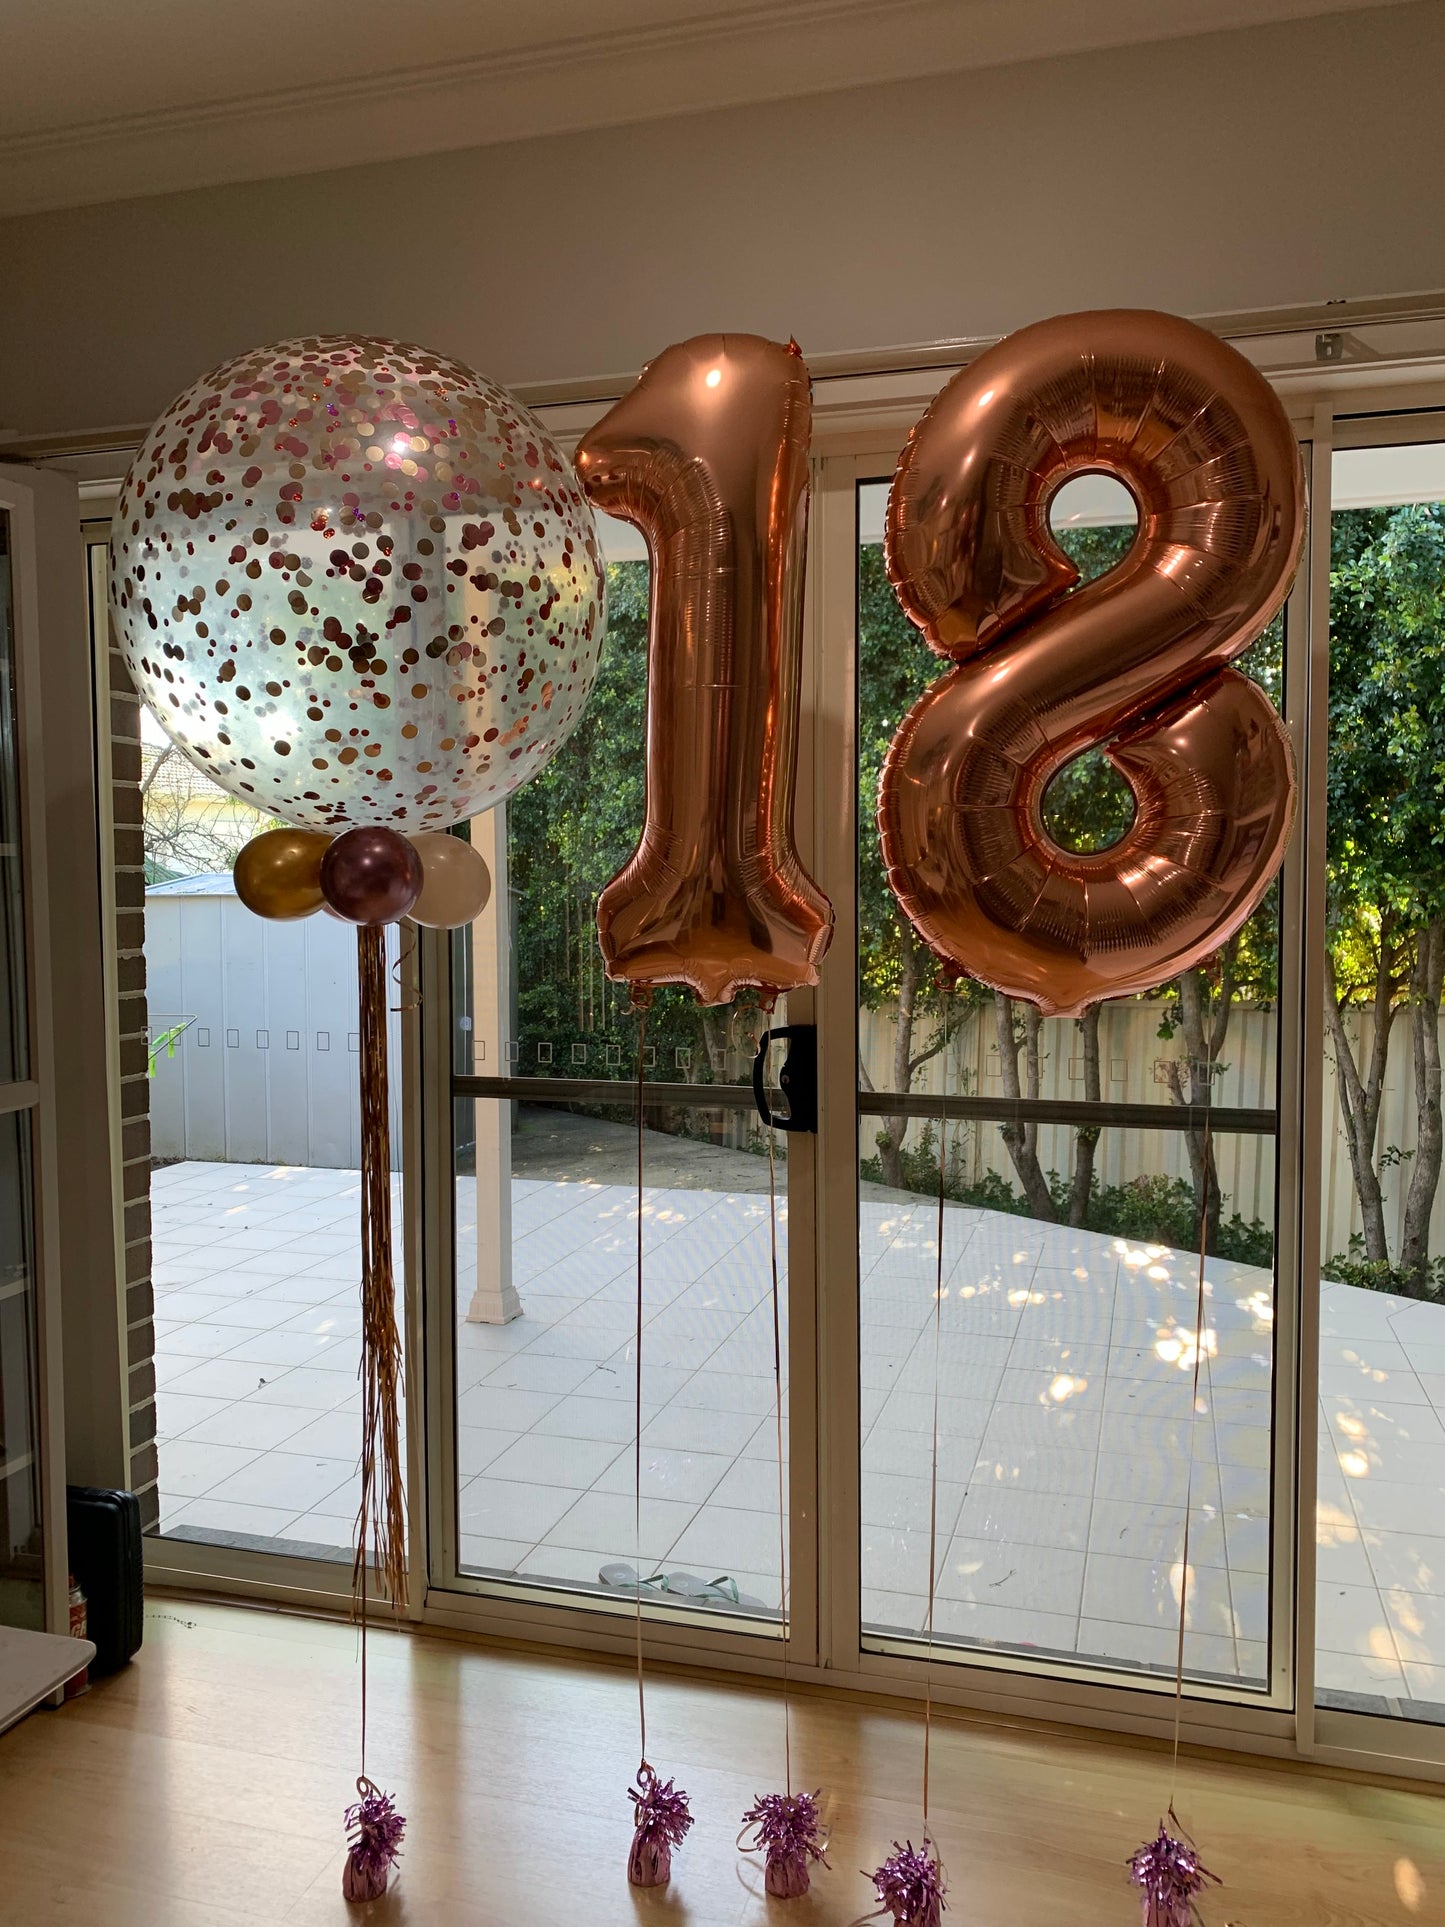 18th Foil Shape Balloon Bouquets Set Up